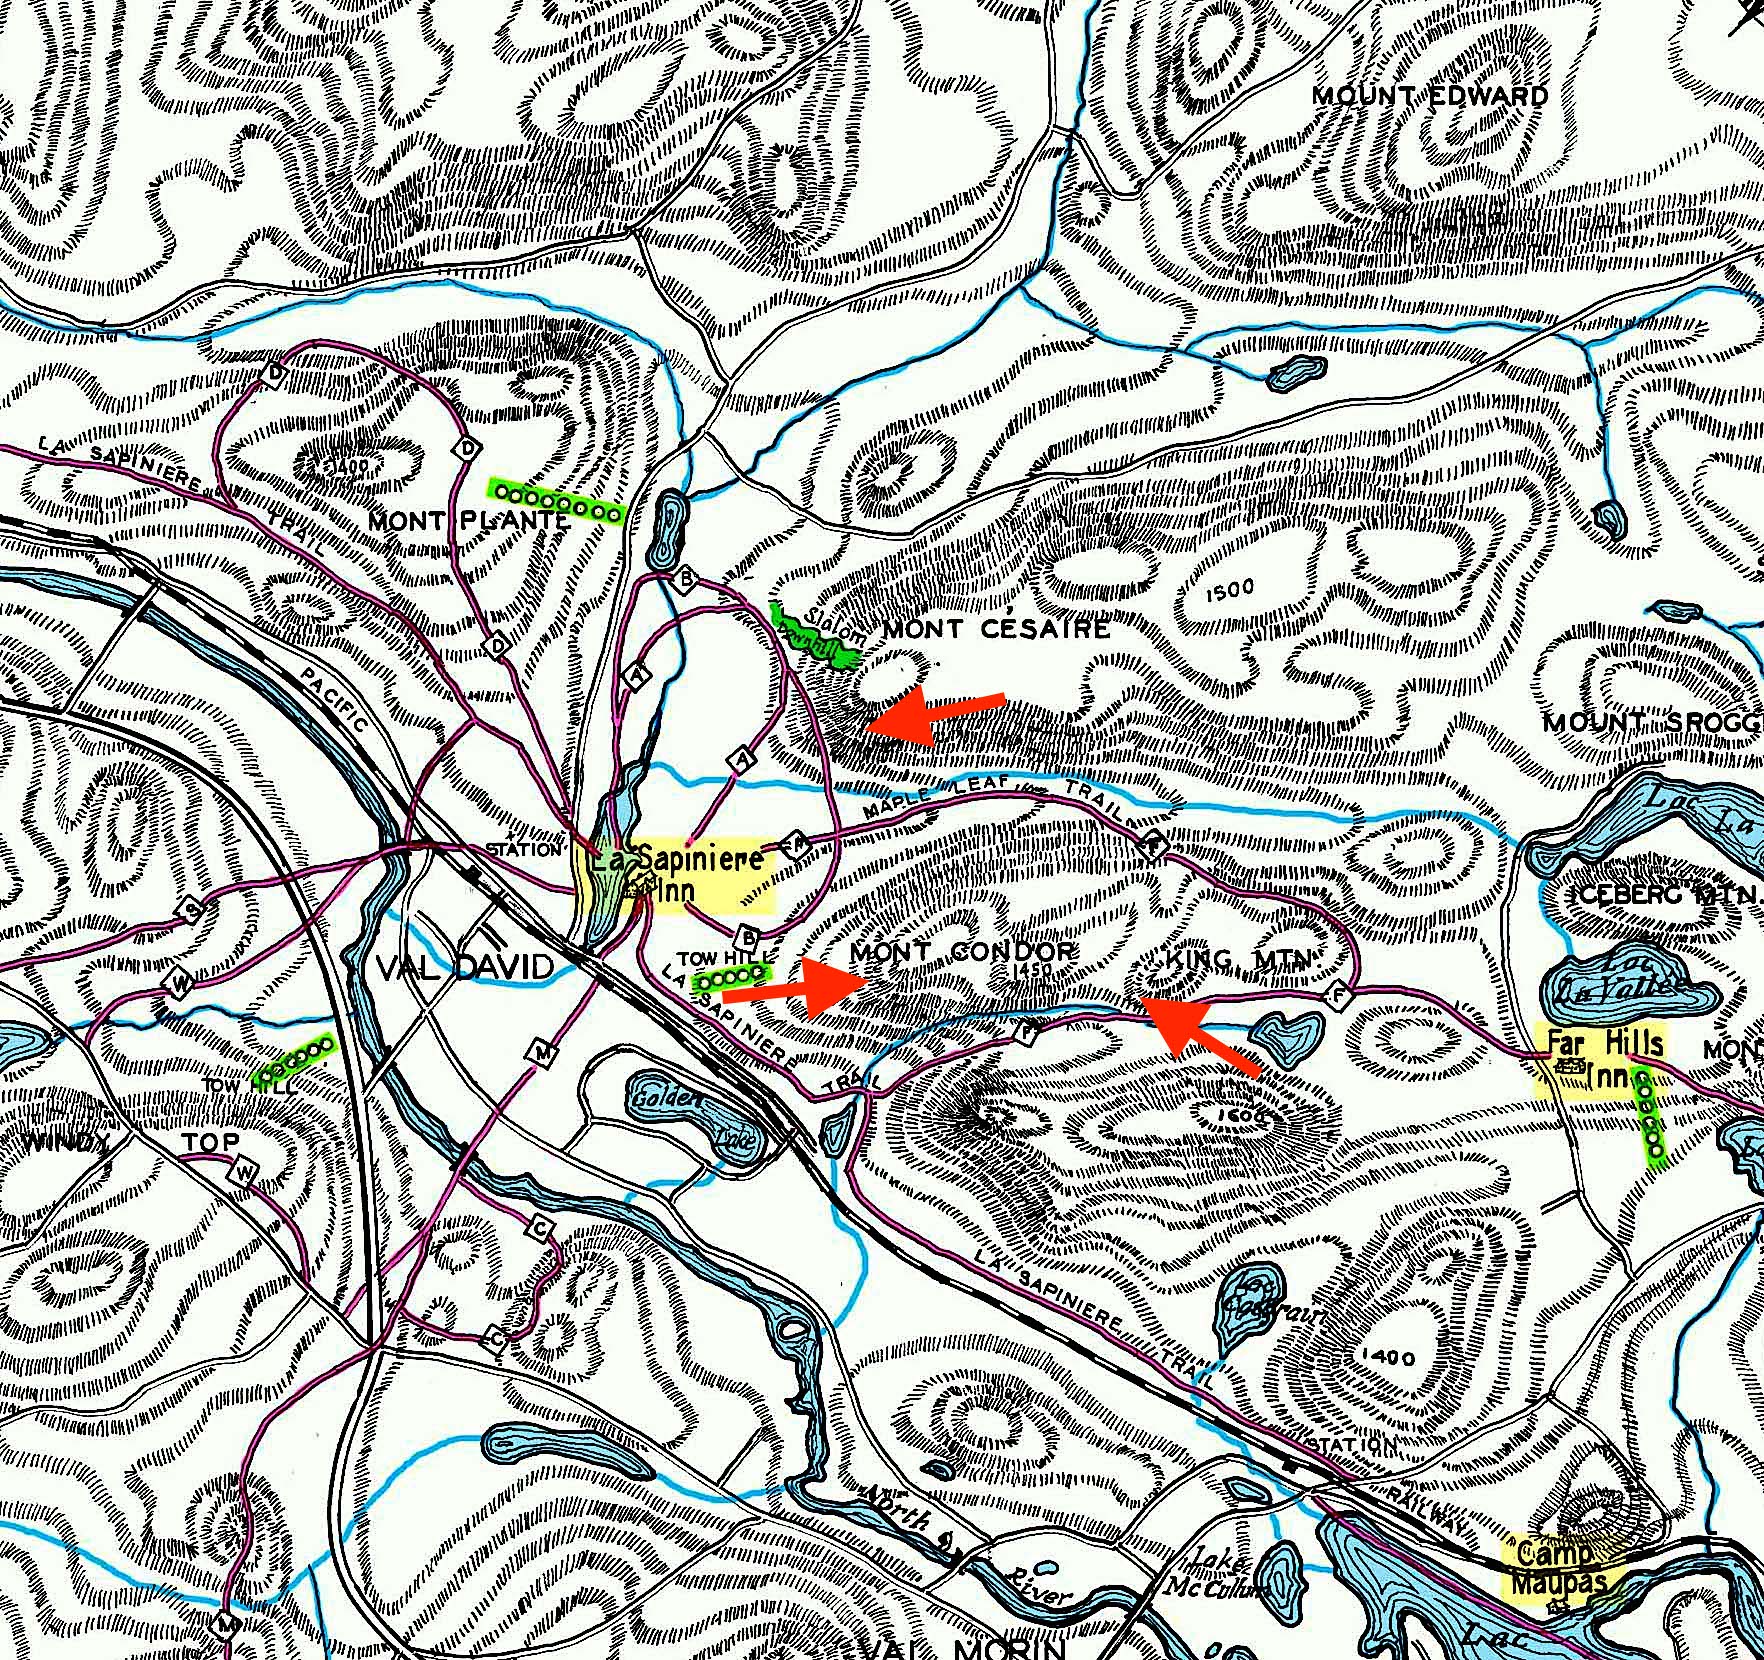 Carte de la région de Val-David et de Val-Morin montrant les dénivelés, les sentiers et les différents endroits où l’escalade se pratiquait sur ce territoire.